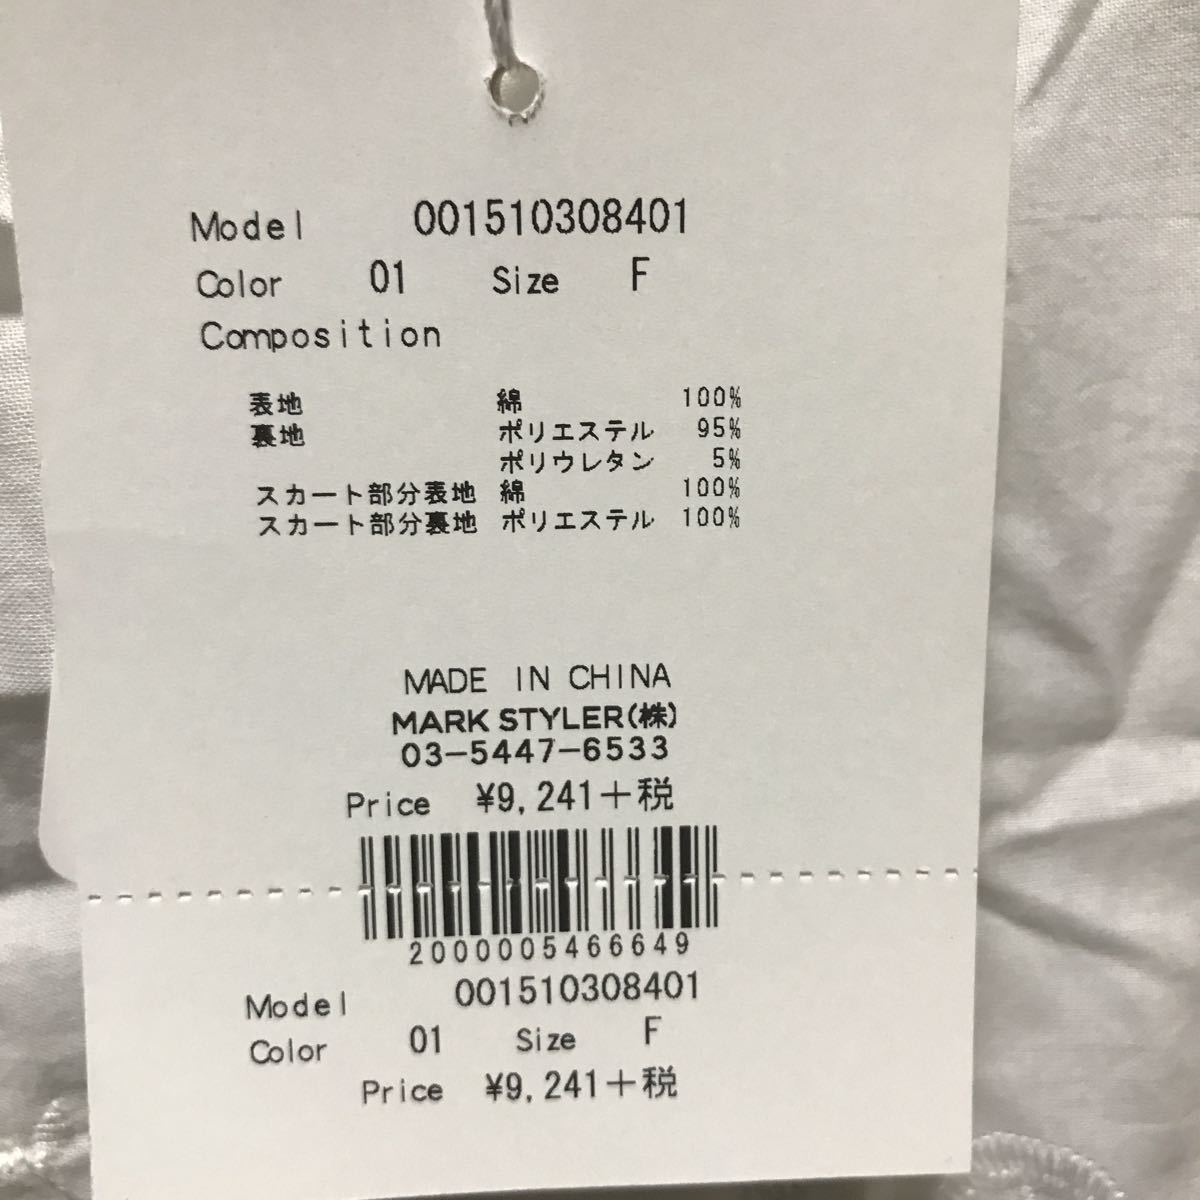  новый товар супер-скидка Mercury Duo One-piece обычная цена 9241 иен .